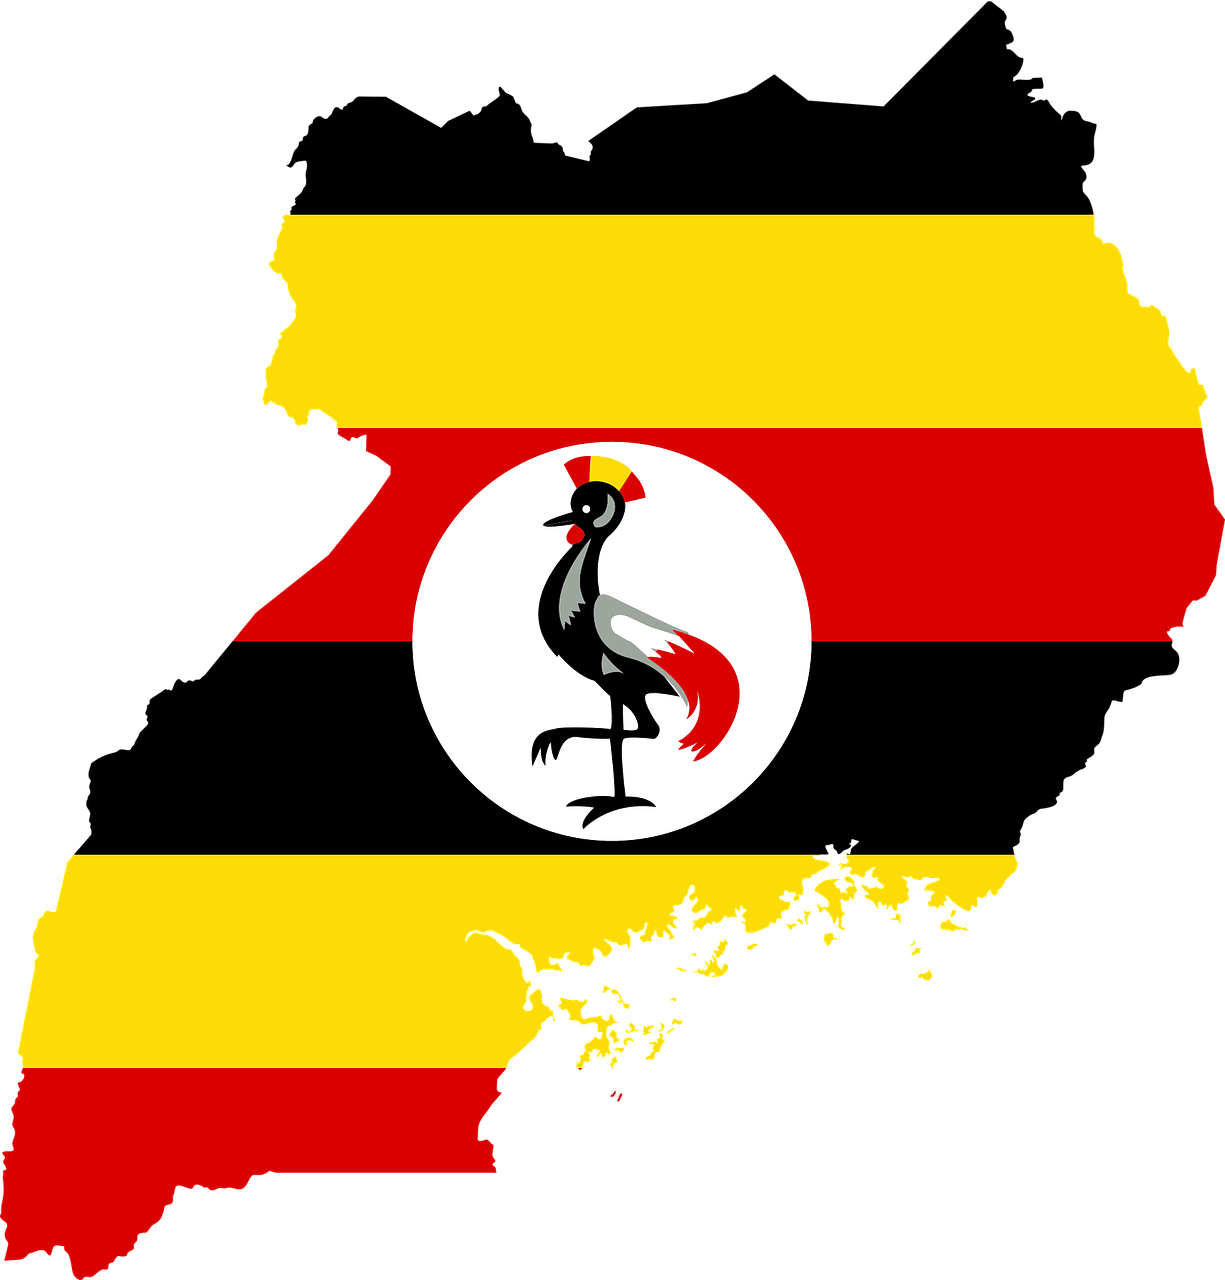 우간다 커피의 생산지인 우간다의 국토형태와 국기